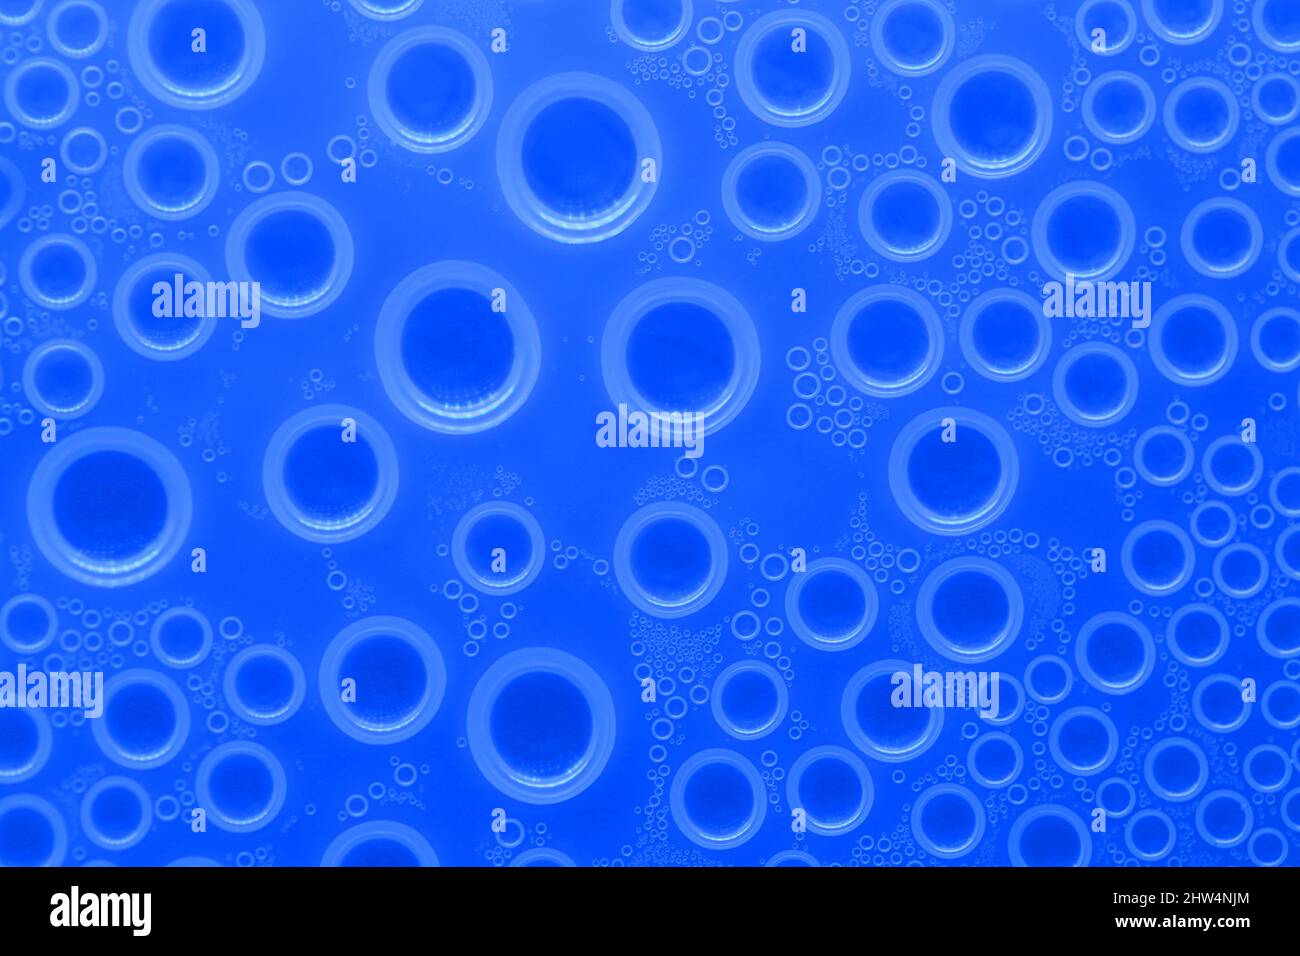 Wasser Blasen Oberfläche.Wallpaper Telefon. Hintergrund mit Tropfen in blauen Tönen. Wasser Blasen und Tropfen Textur.blaue Kreise Muster Stockfoto